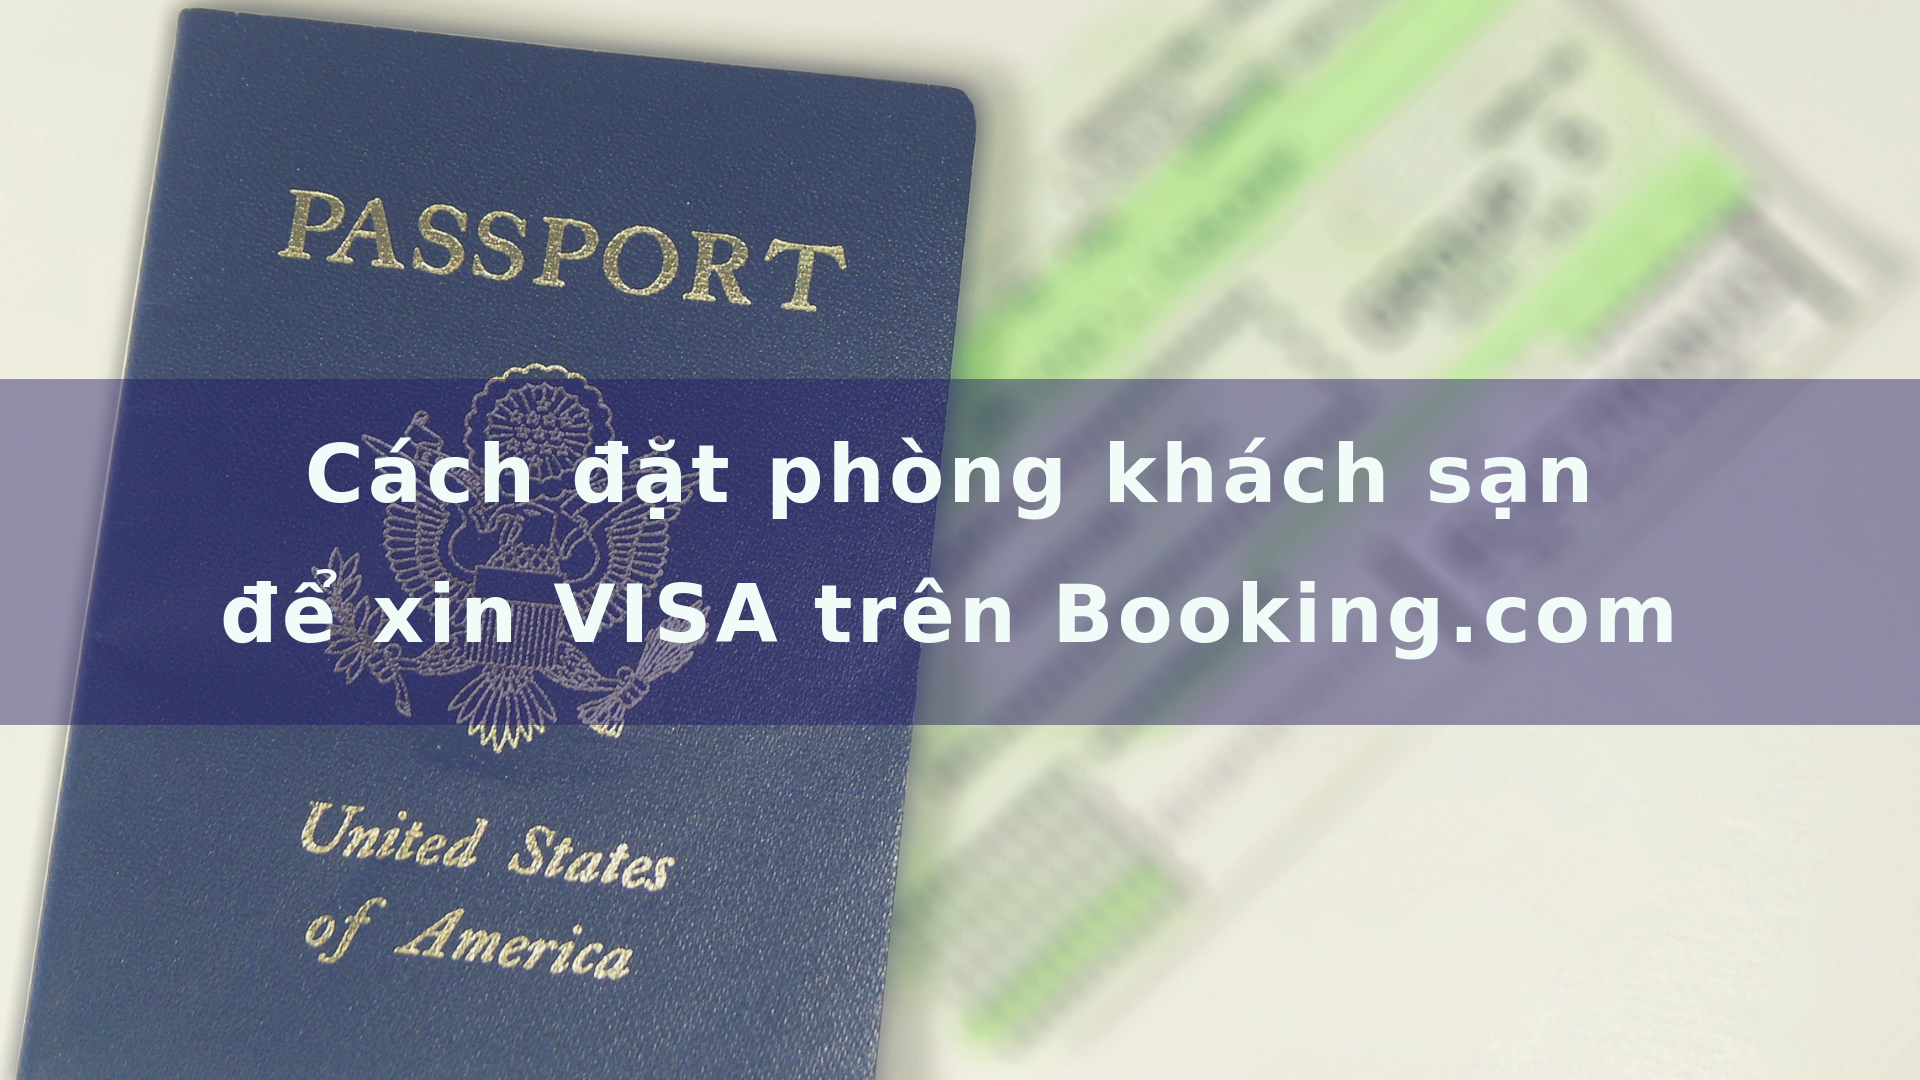 Cách đặt phòng khách sạn để xin VISA trên Booking.com